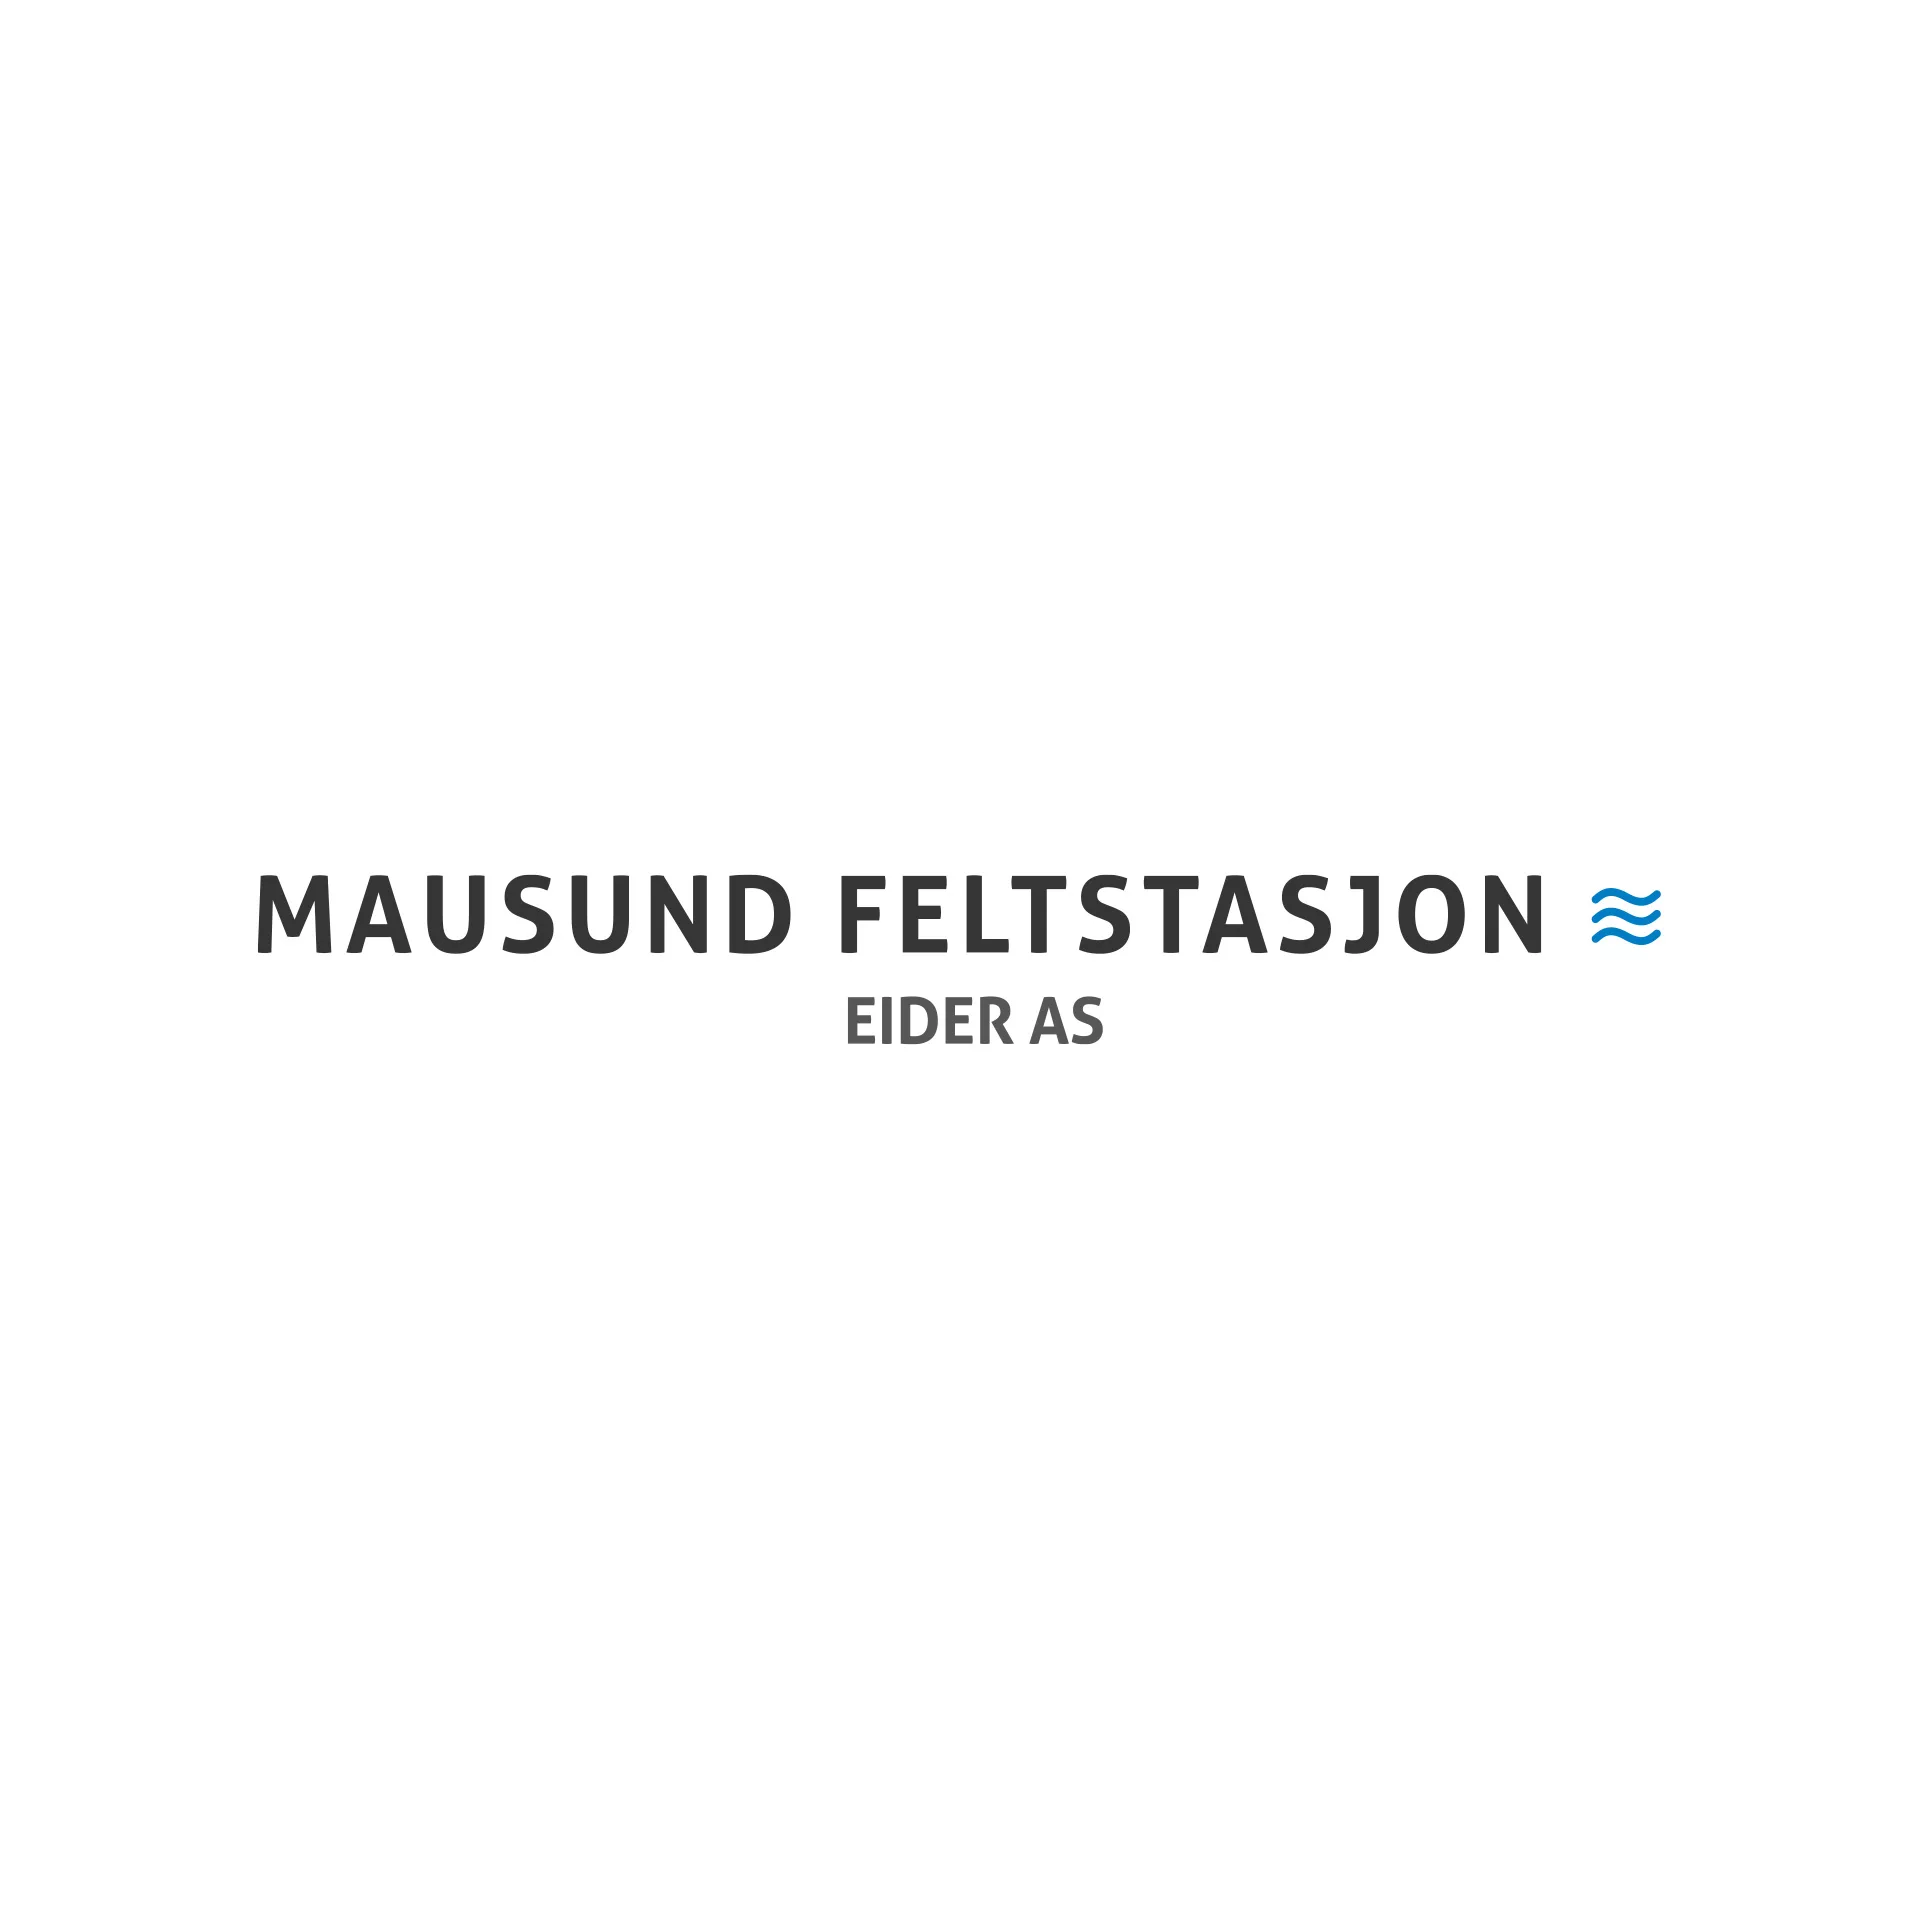 Vinnvinn Reklame Mausund Feltstasjon Eider Logo Gammel